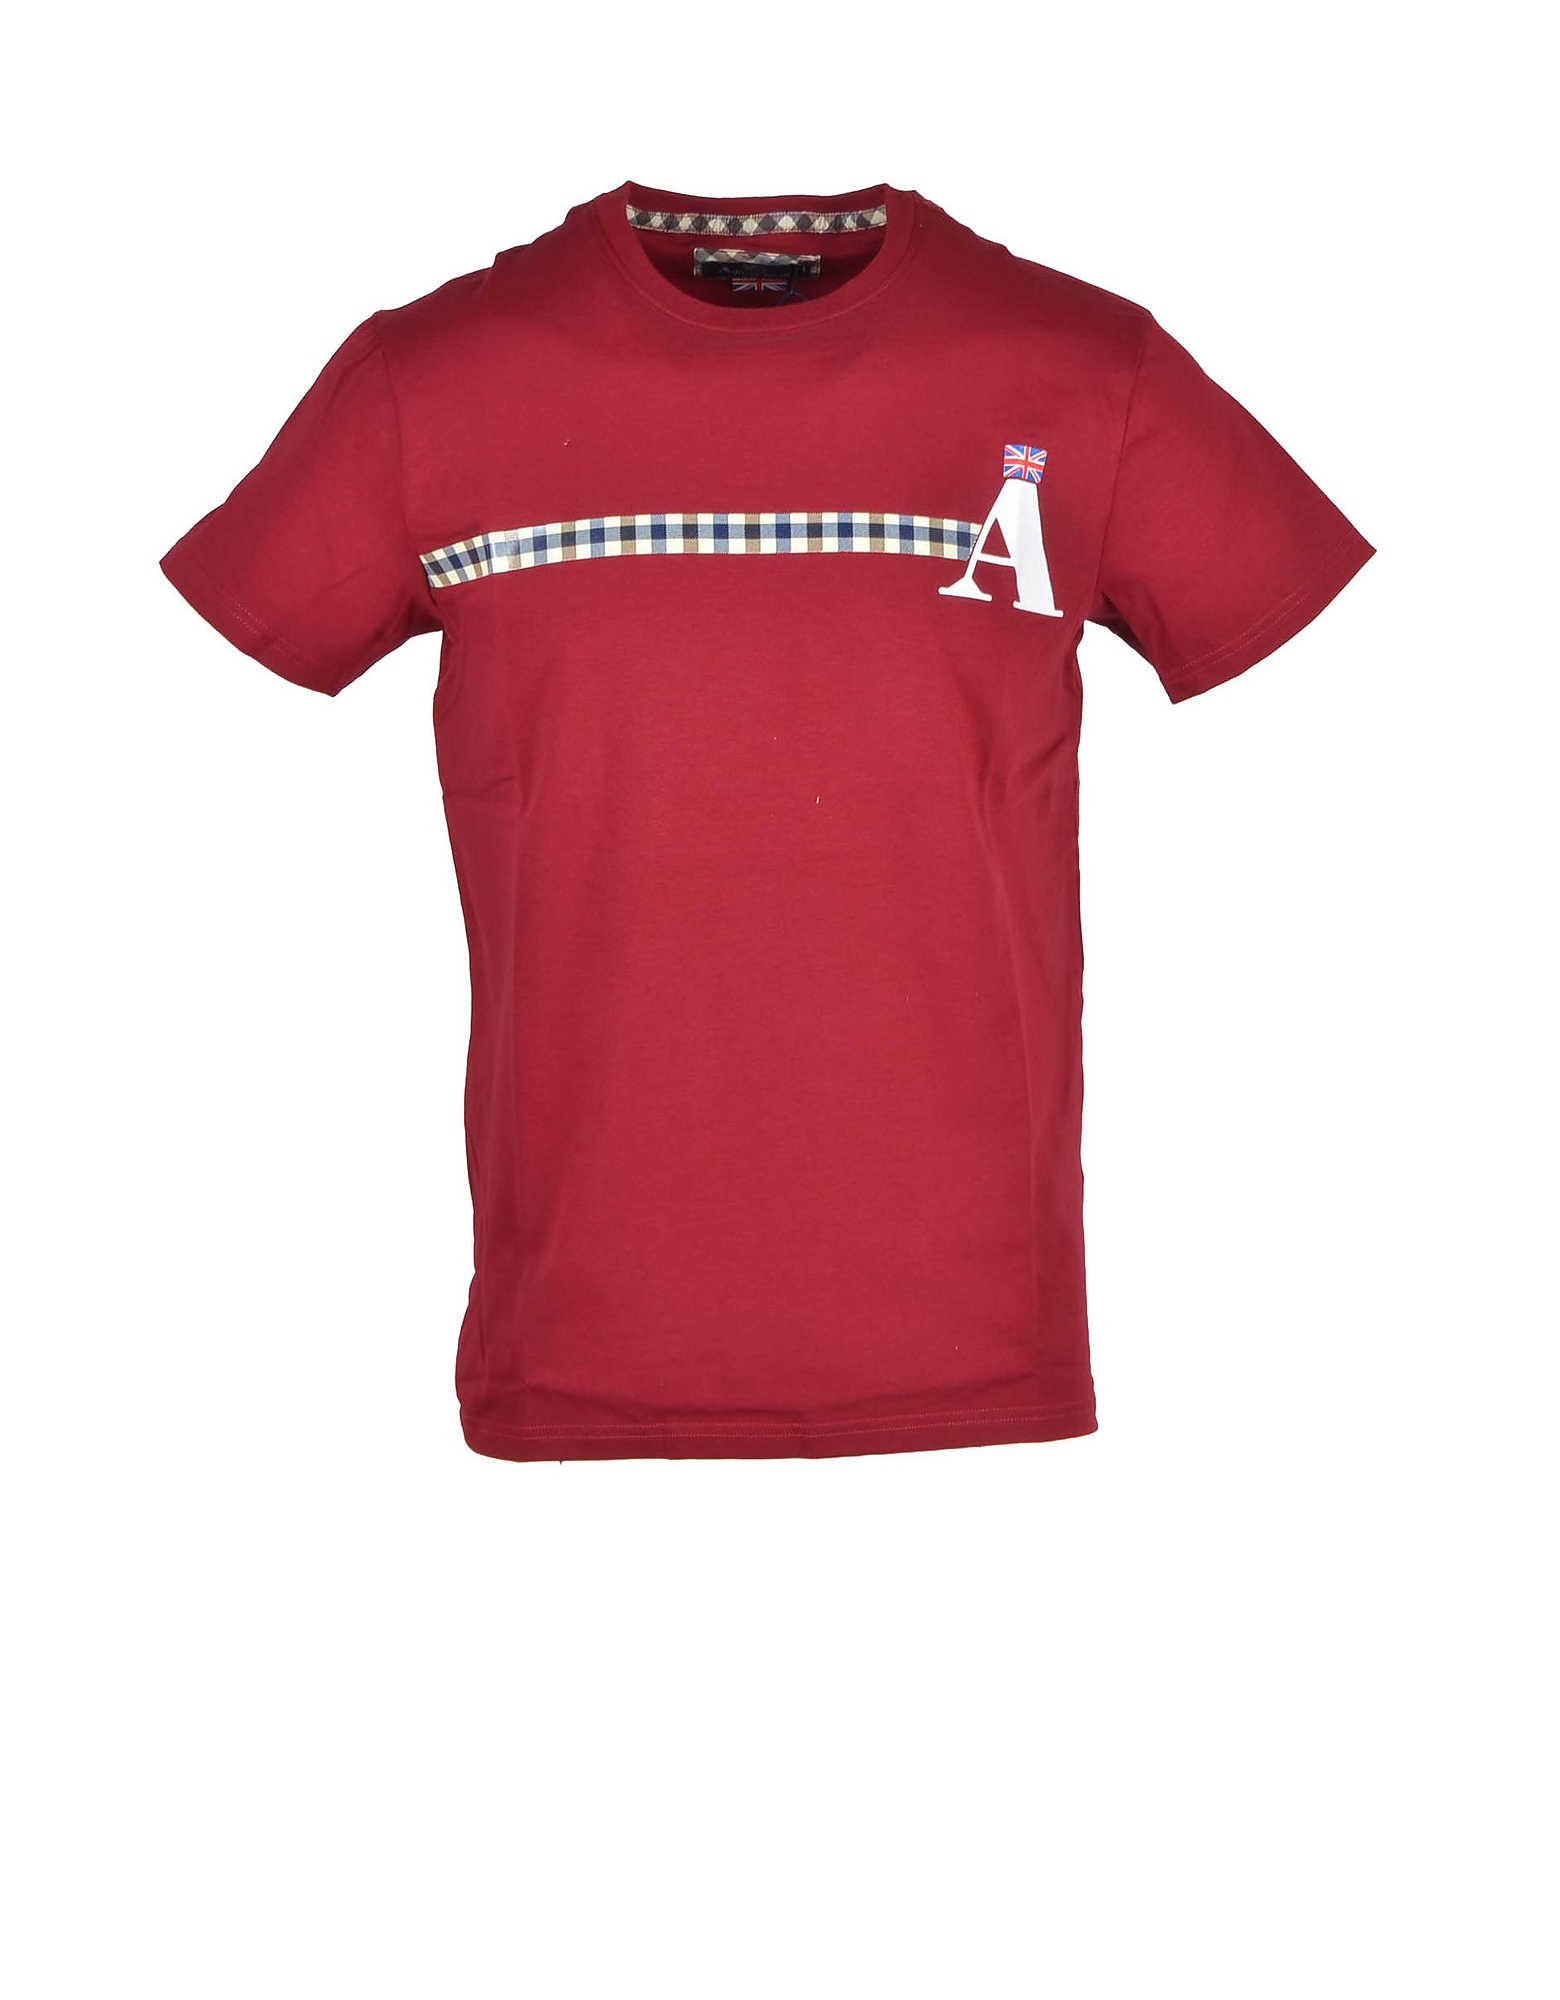 Aquascutum T-shirts Men's Bordeaux T-shirt